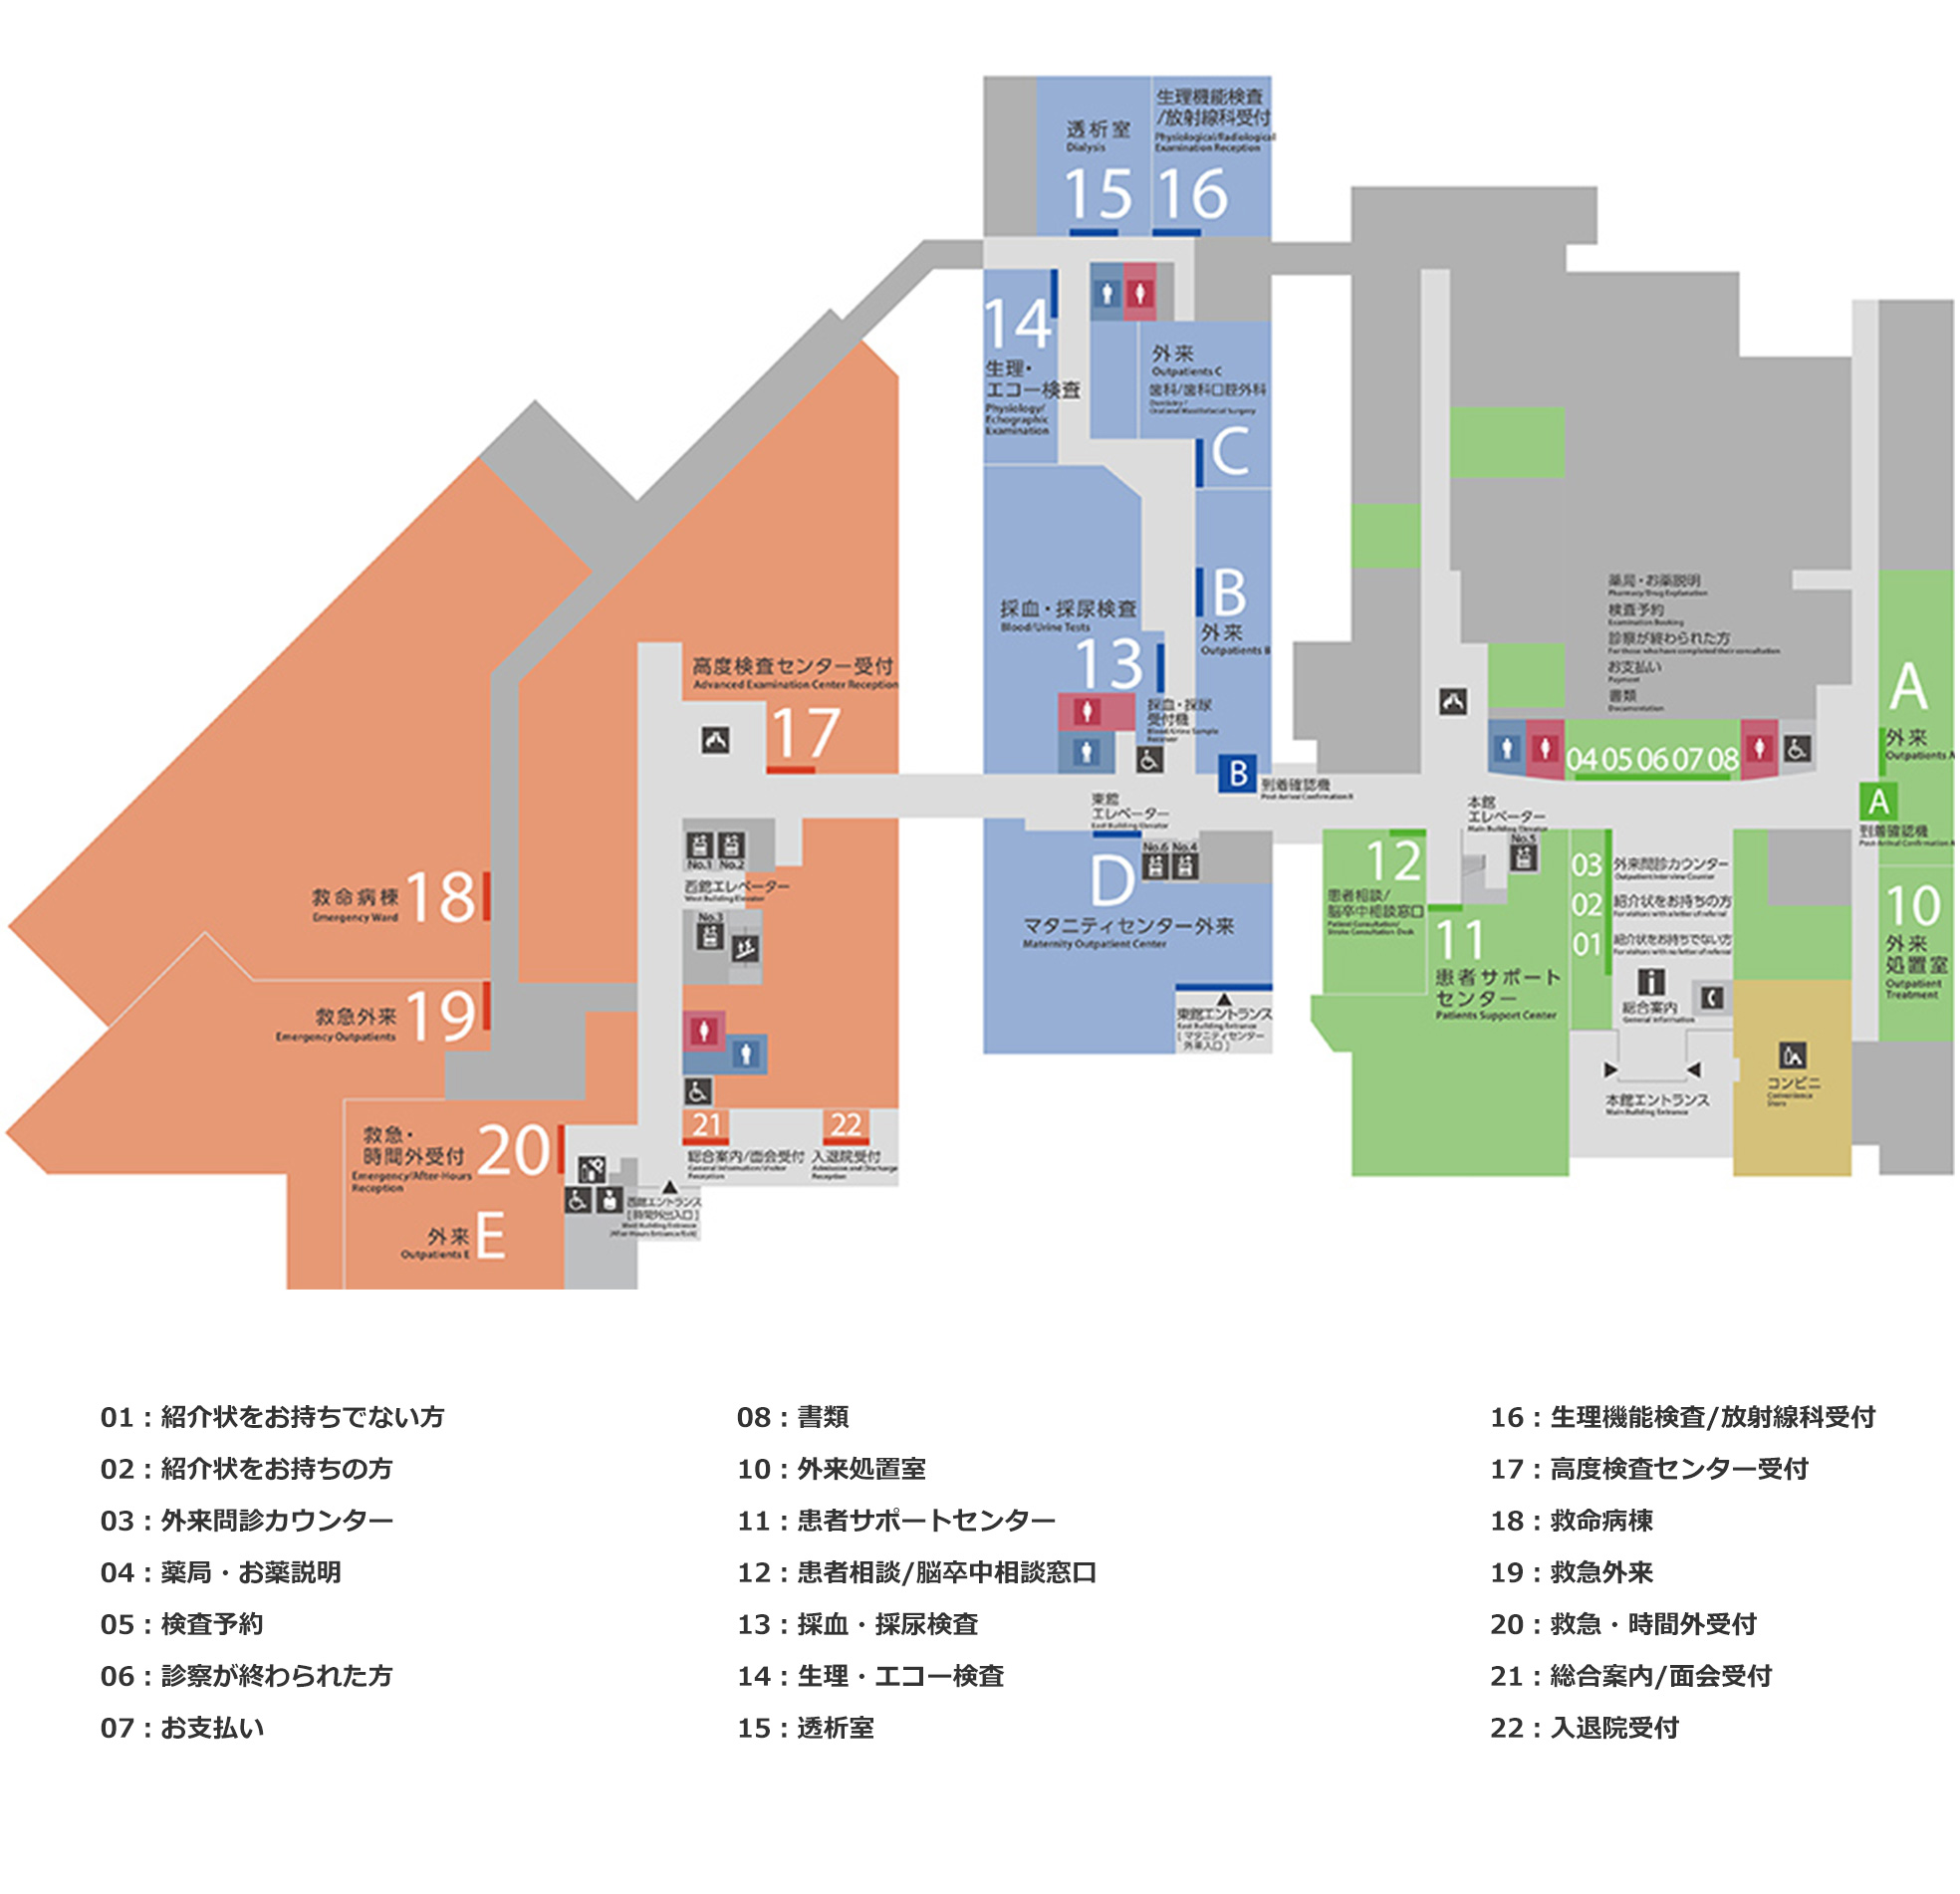 海老名総合病院 1階フロアマップ